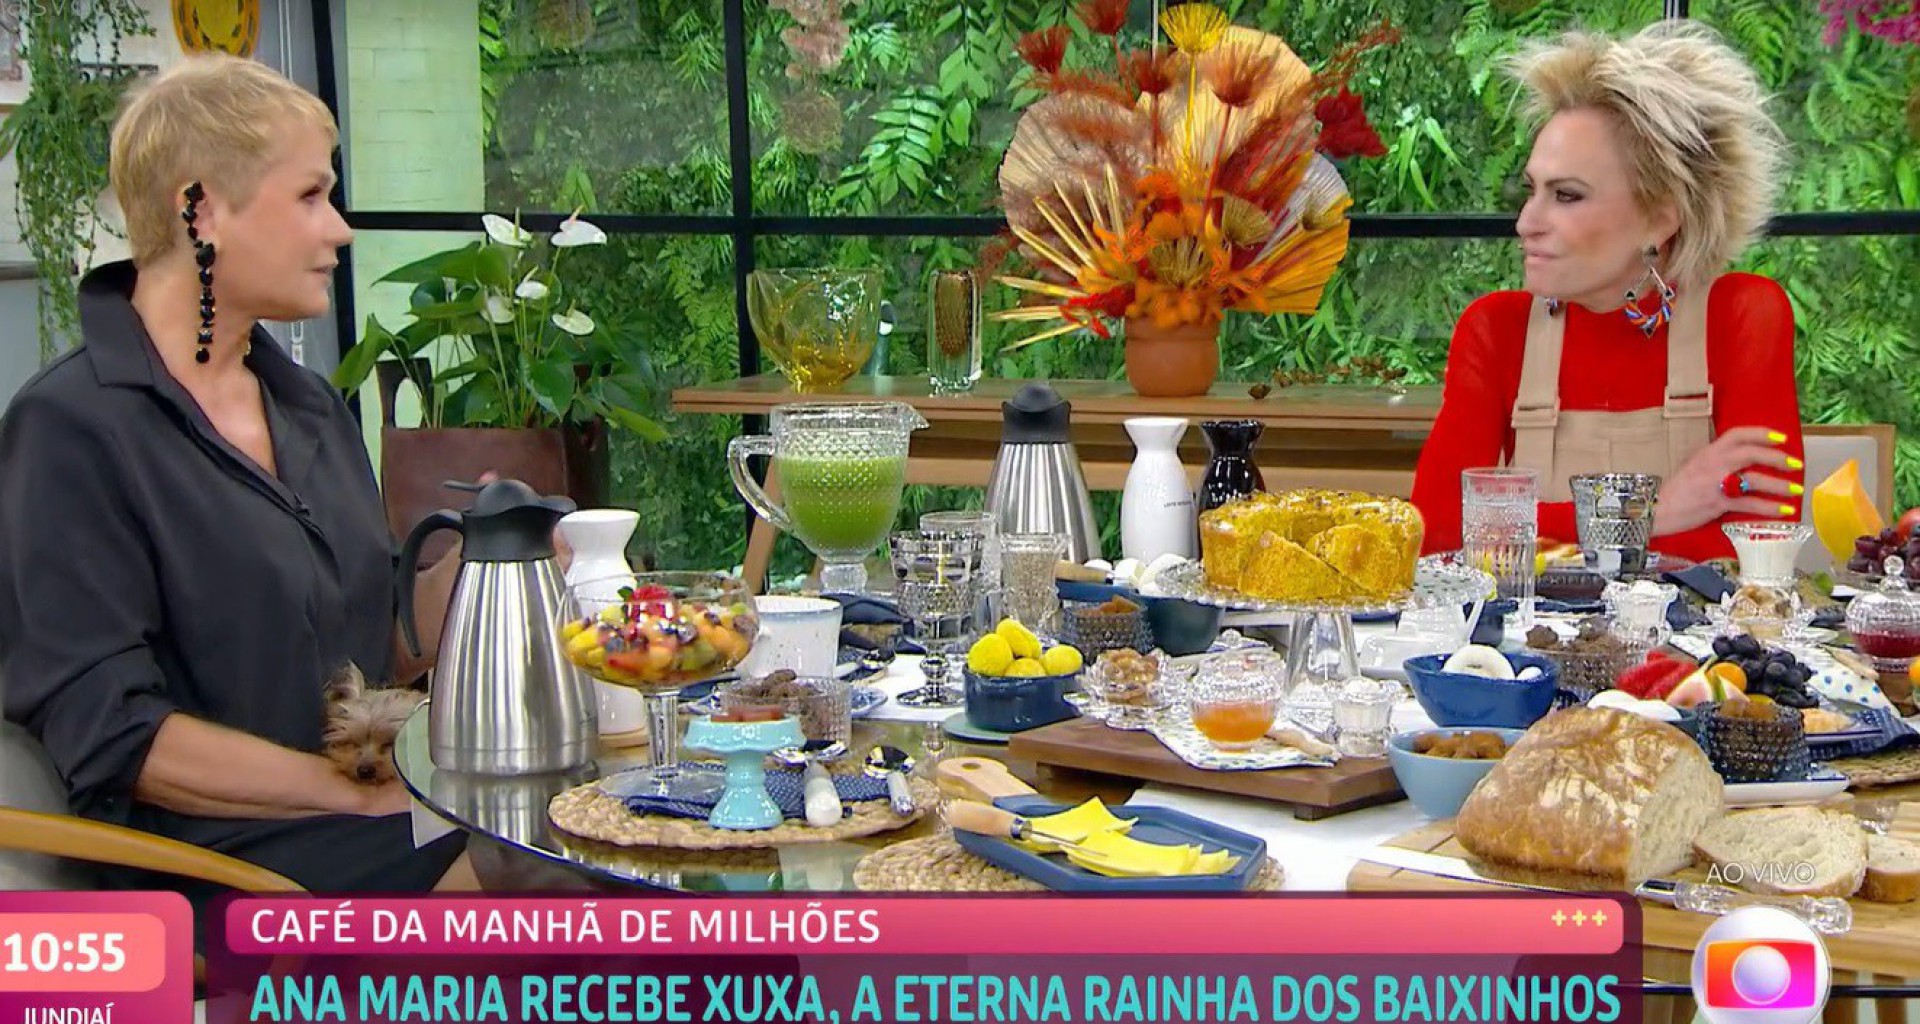  - Reprodução da TV Globo